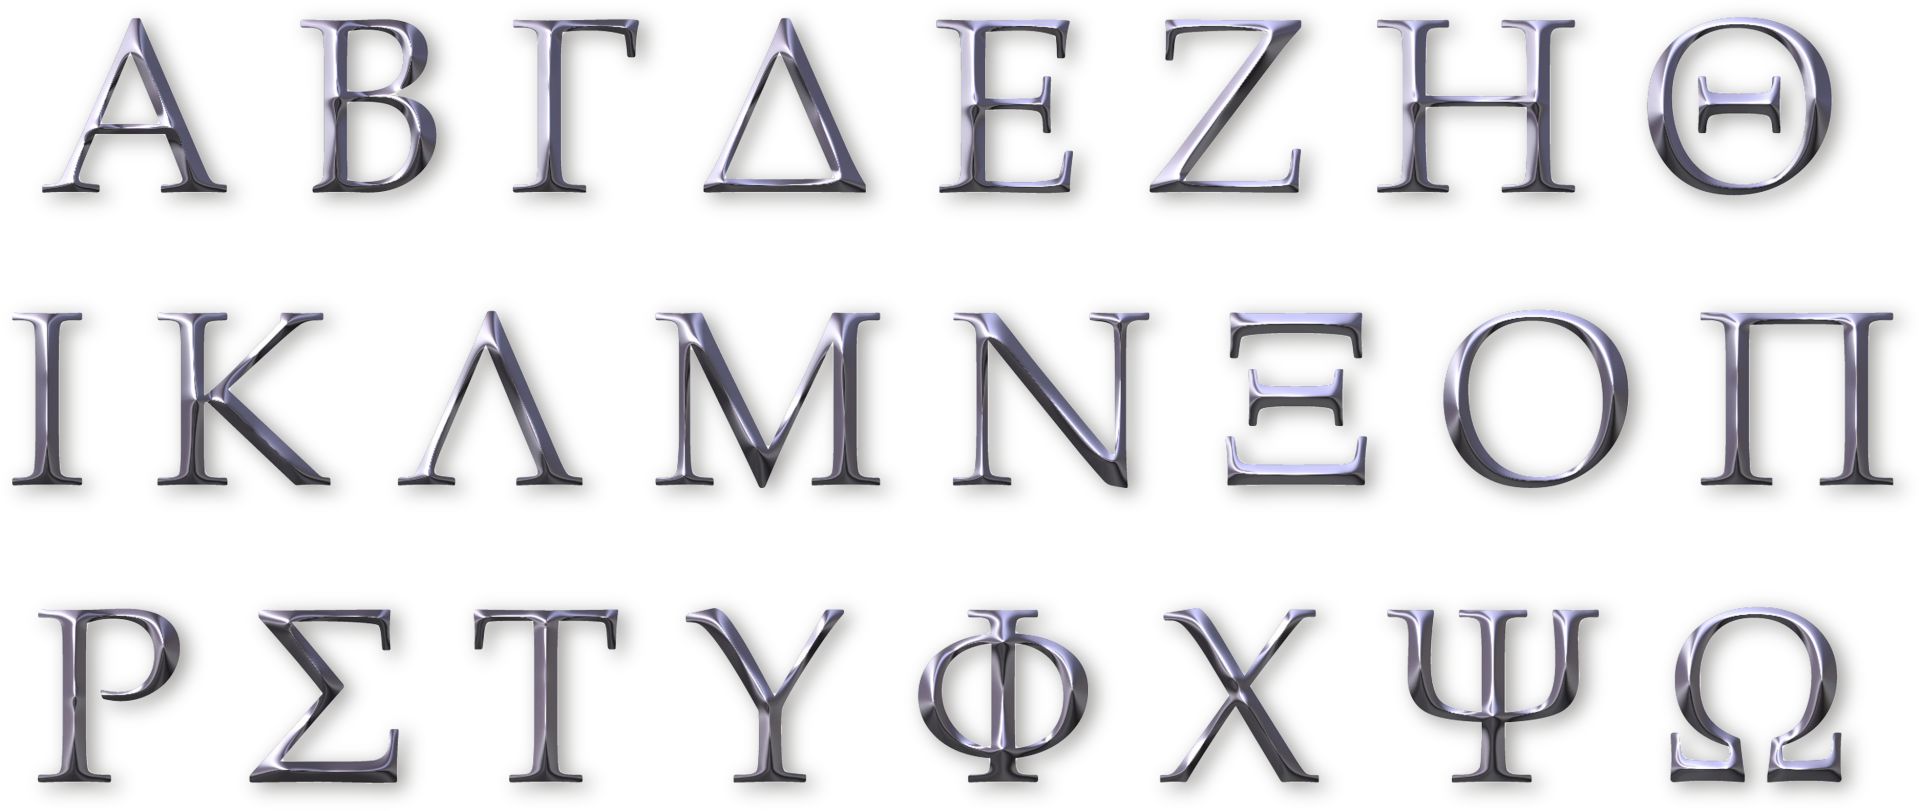 La antigua Grecia para niños: alfabeto y letras griegas